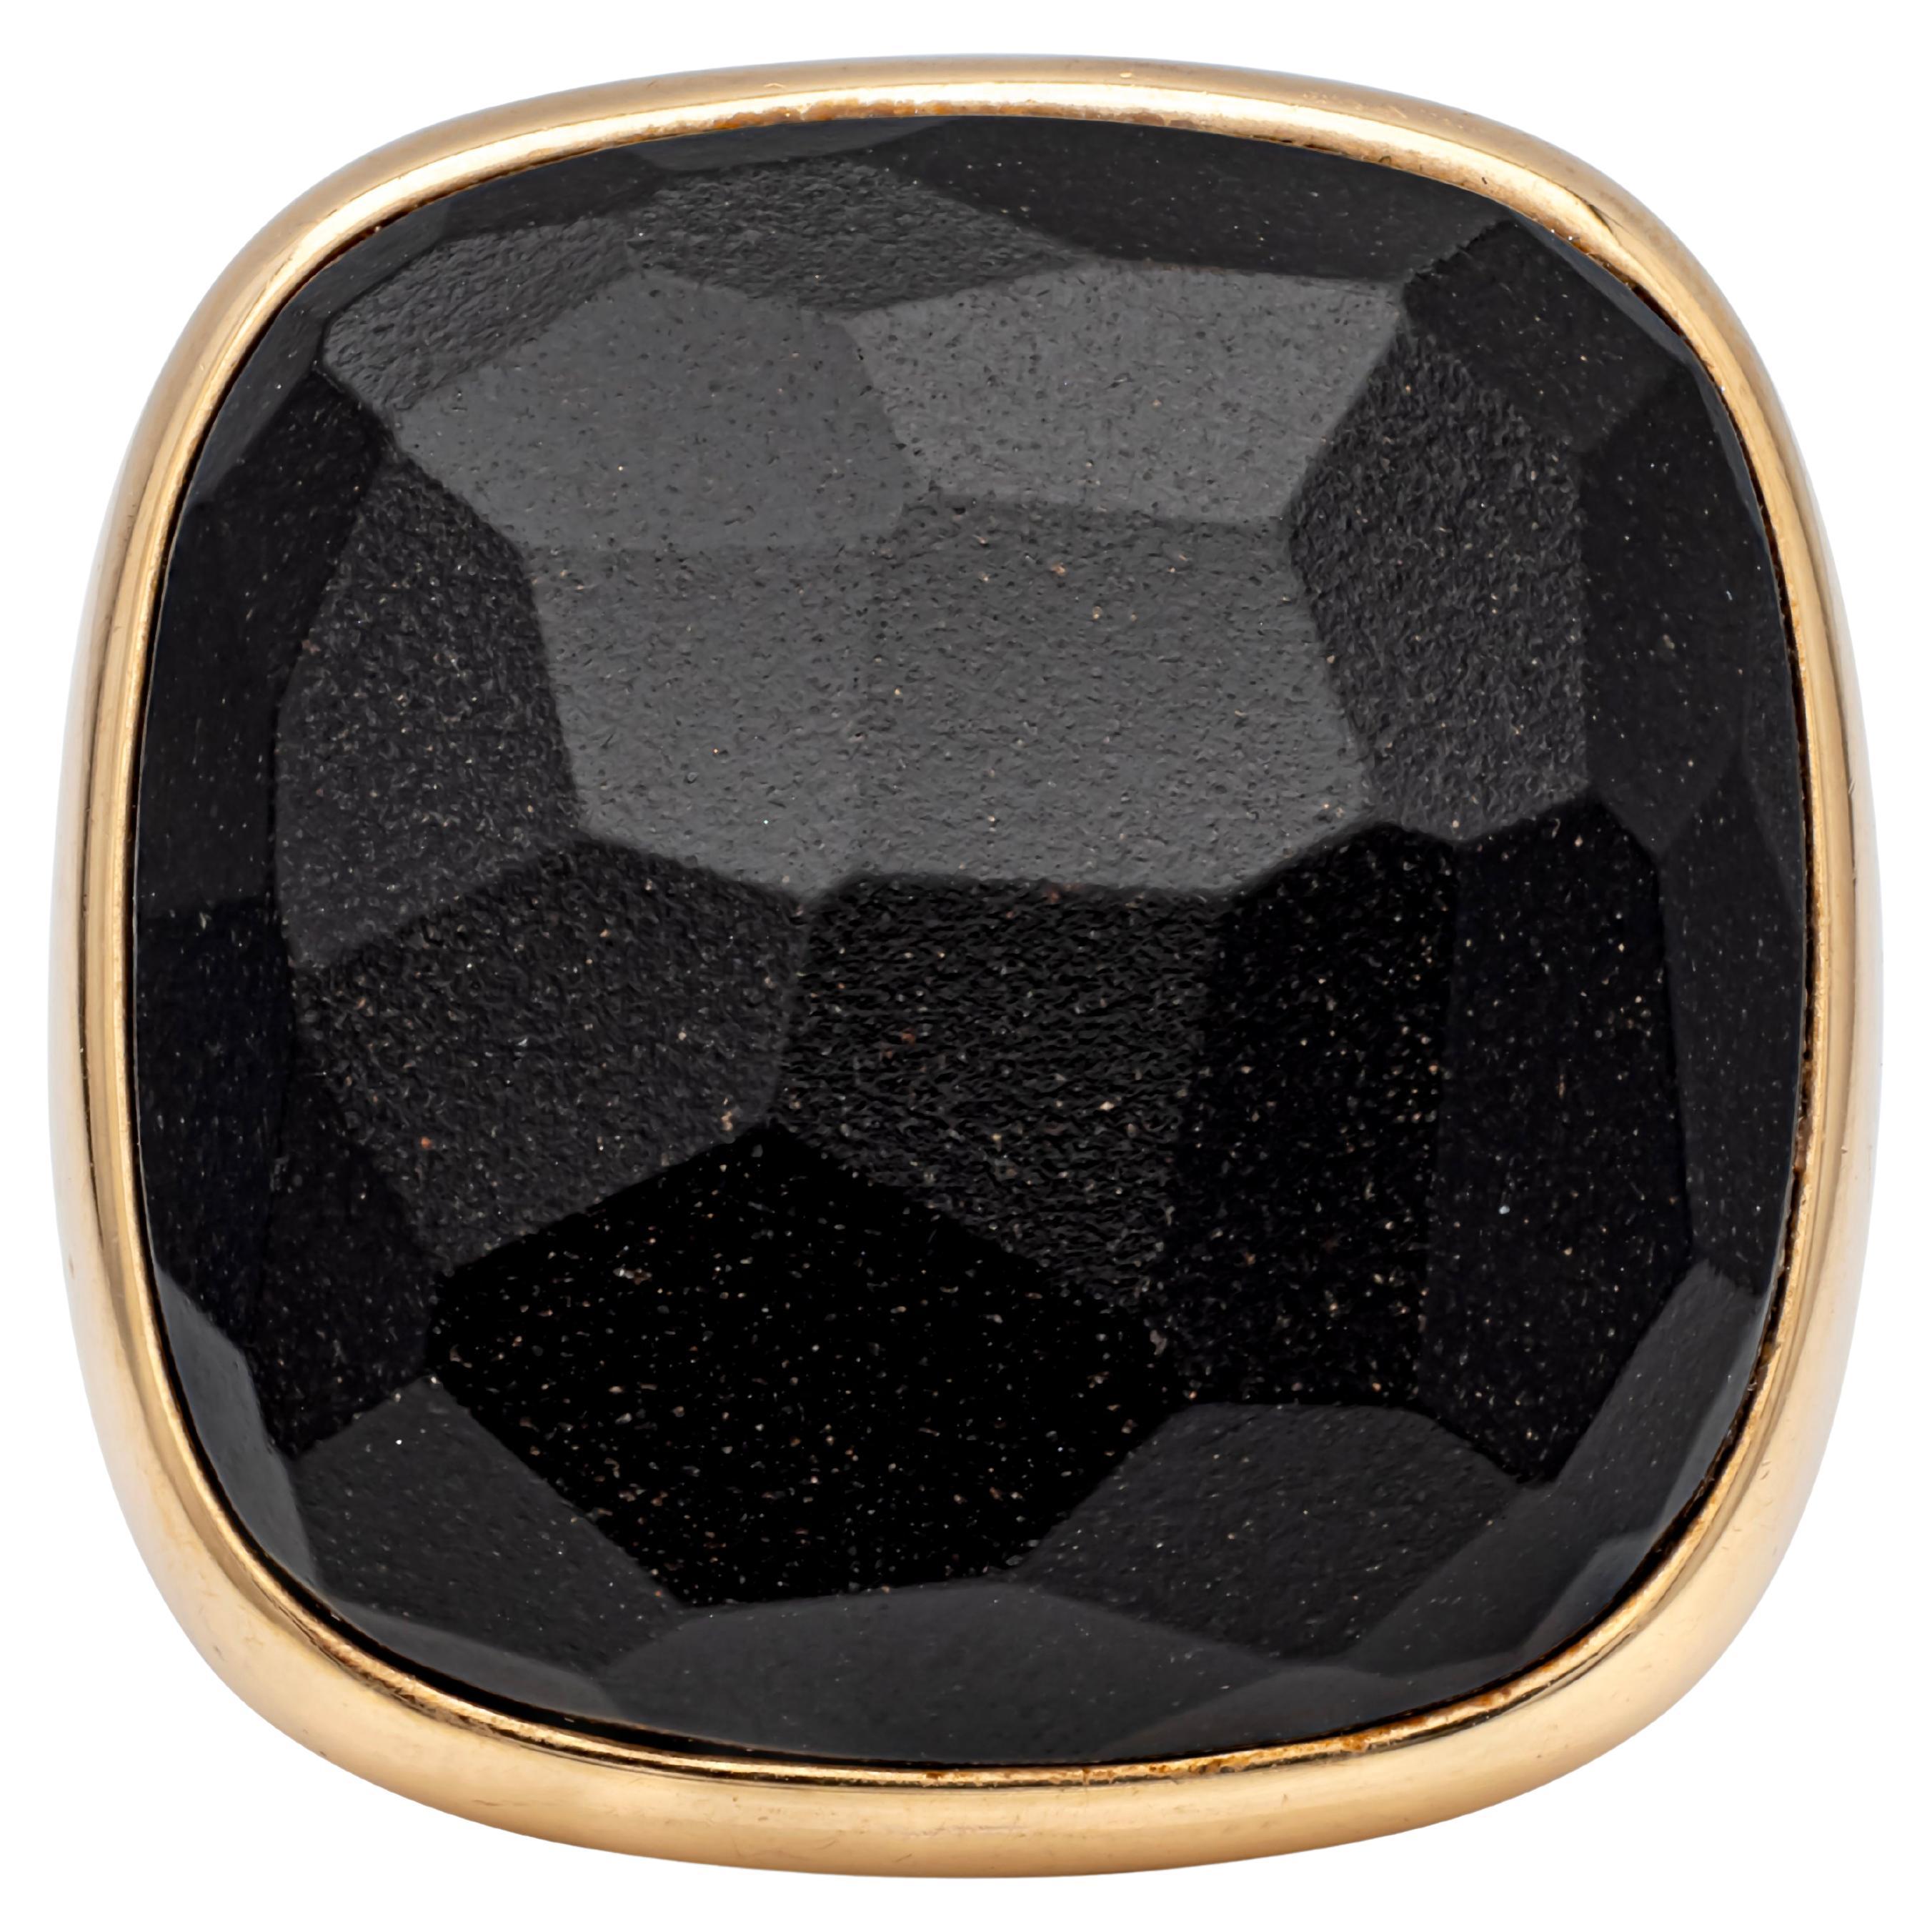 Signée par Pomellato, fabuleuse et authentique bague de mode Victoria en or rose 18 carats avec amulette en jais noir. Taille 5.5 US avec anneau de calibrage. 




